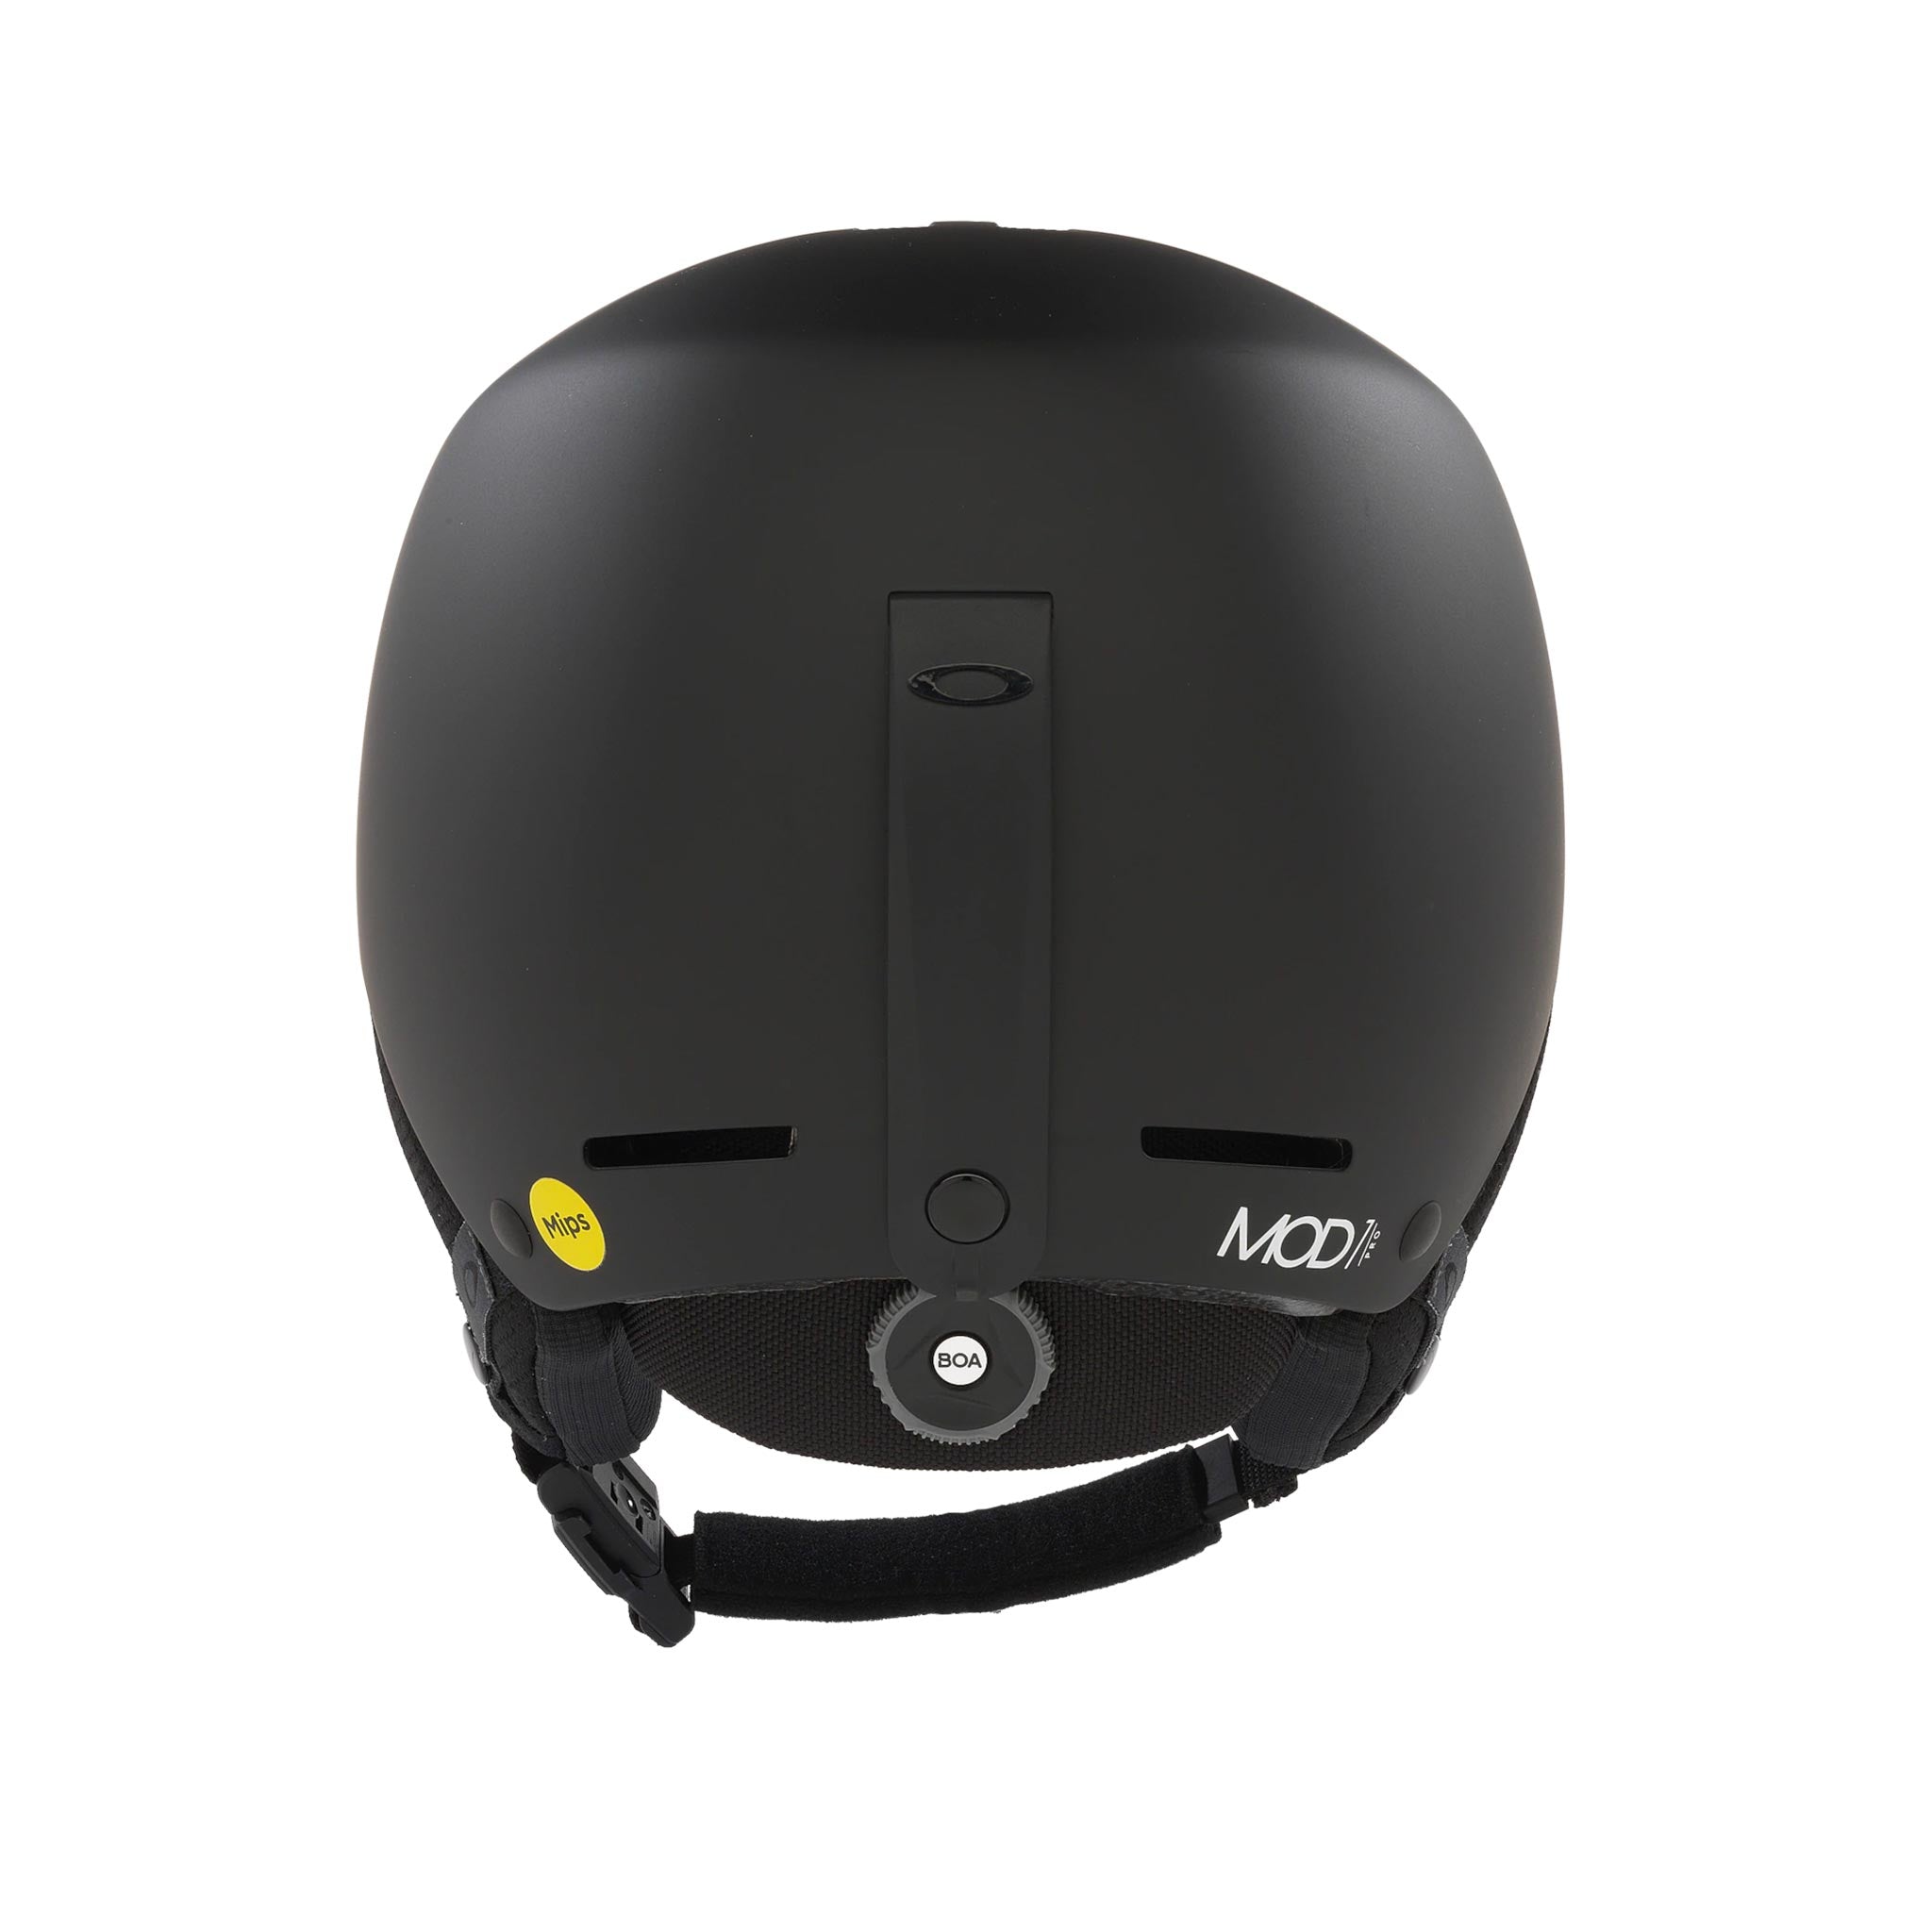 Mod1 Pro MIPS Helmet in Blackout